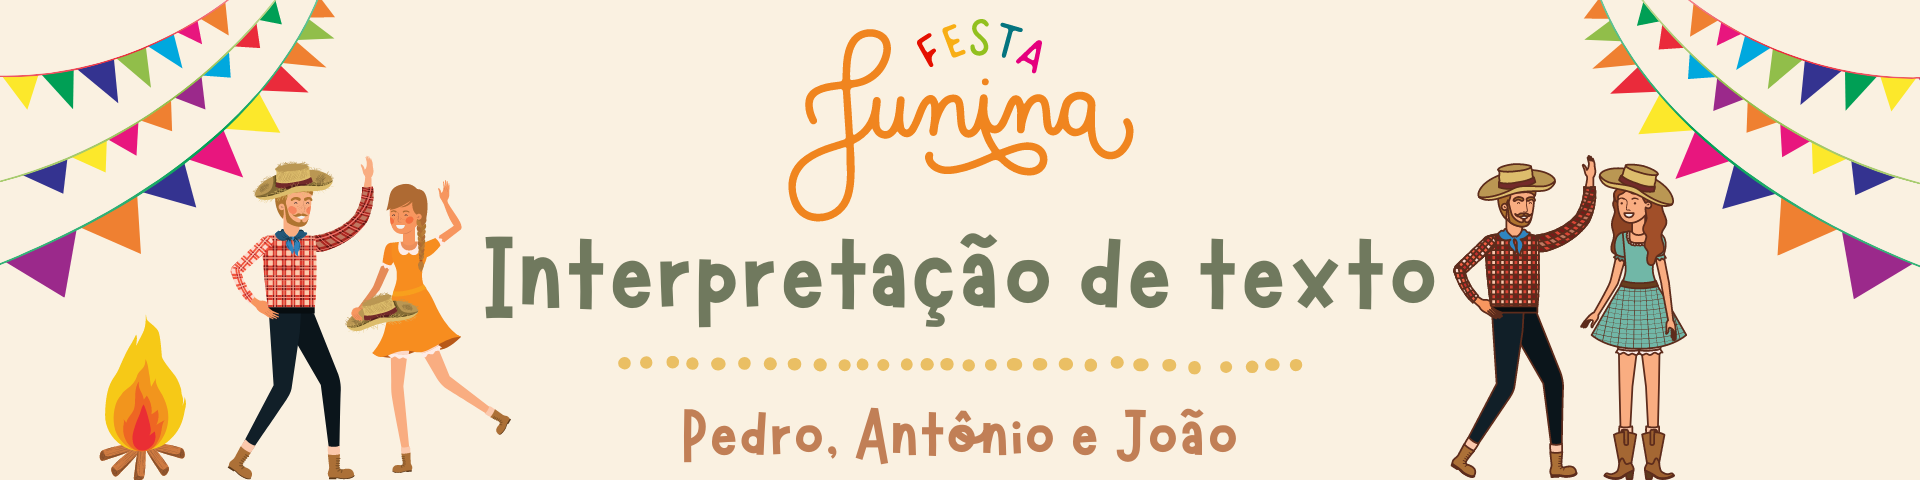 Interpretação de texto: música junina Pedro, Antônio e João - 8.º ano e 9.º ano